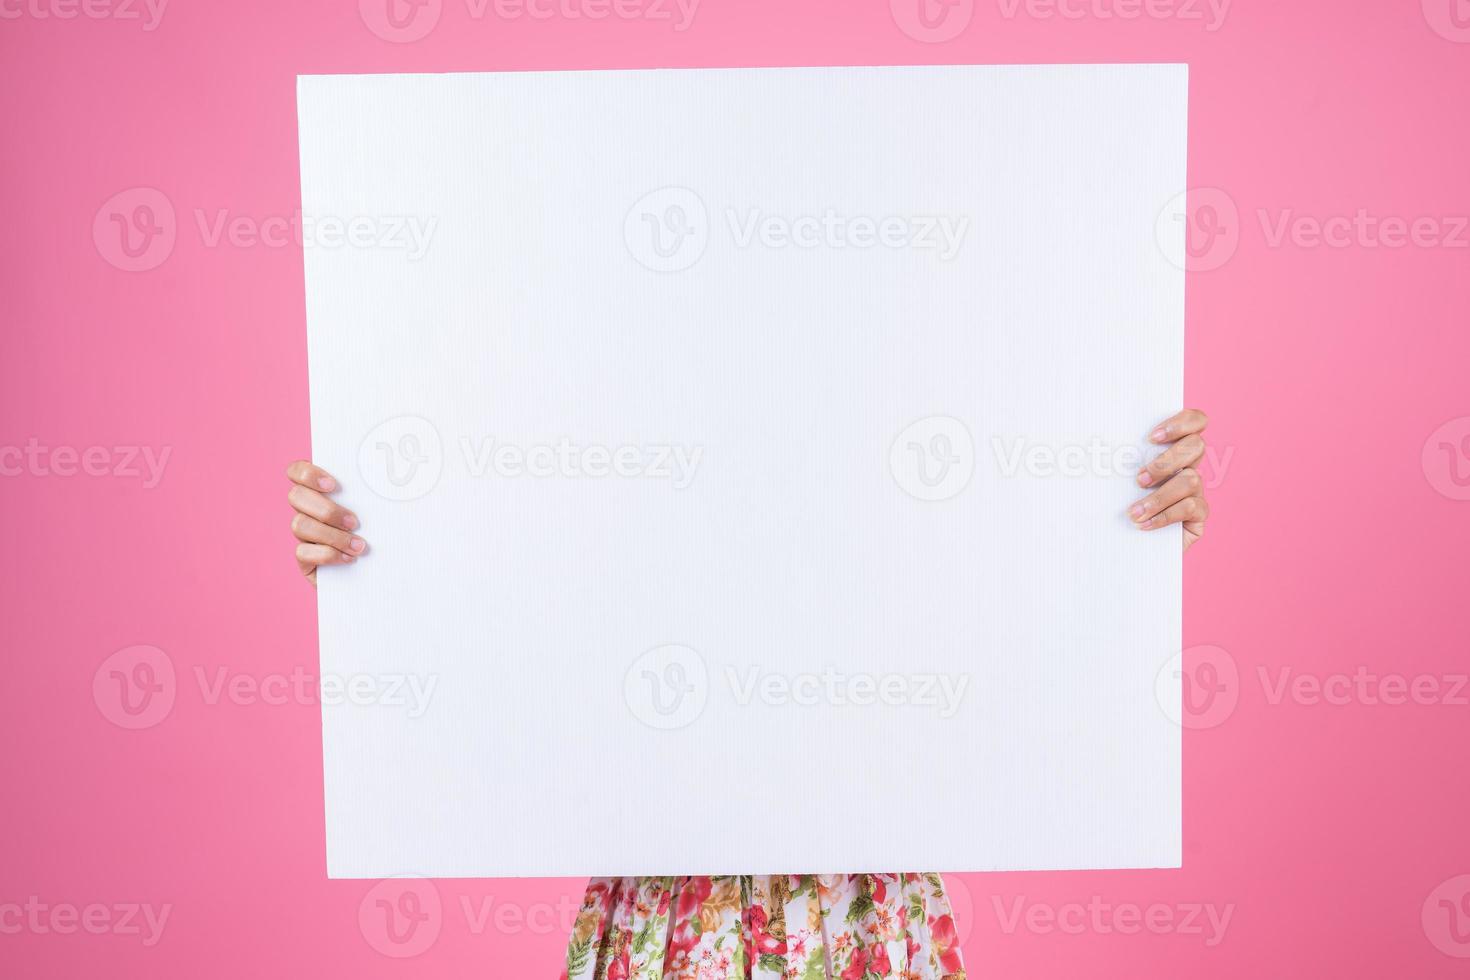 retrato de uma mulher elegante exibindo uma faixa branca foto